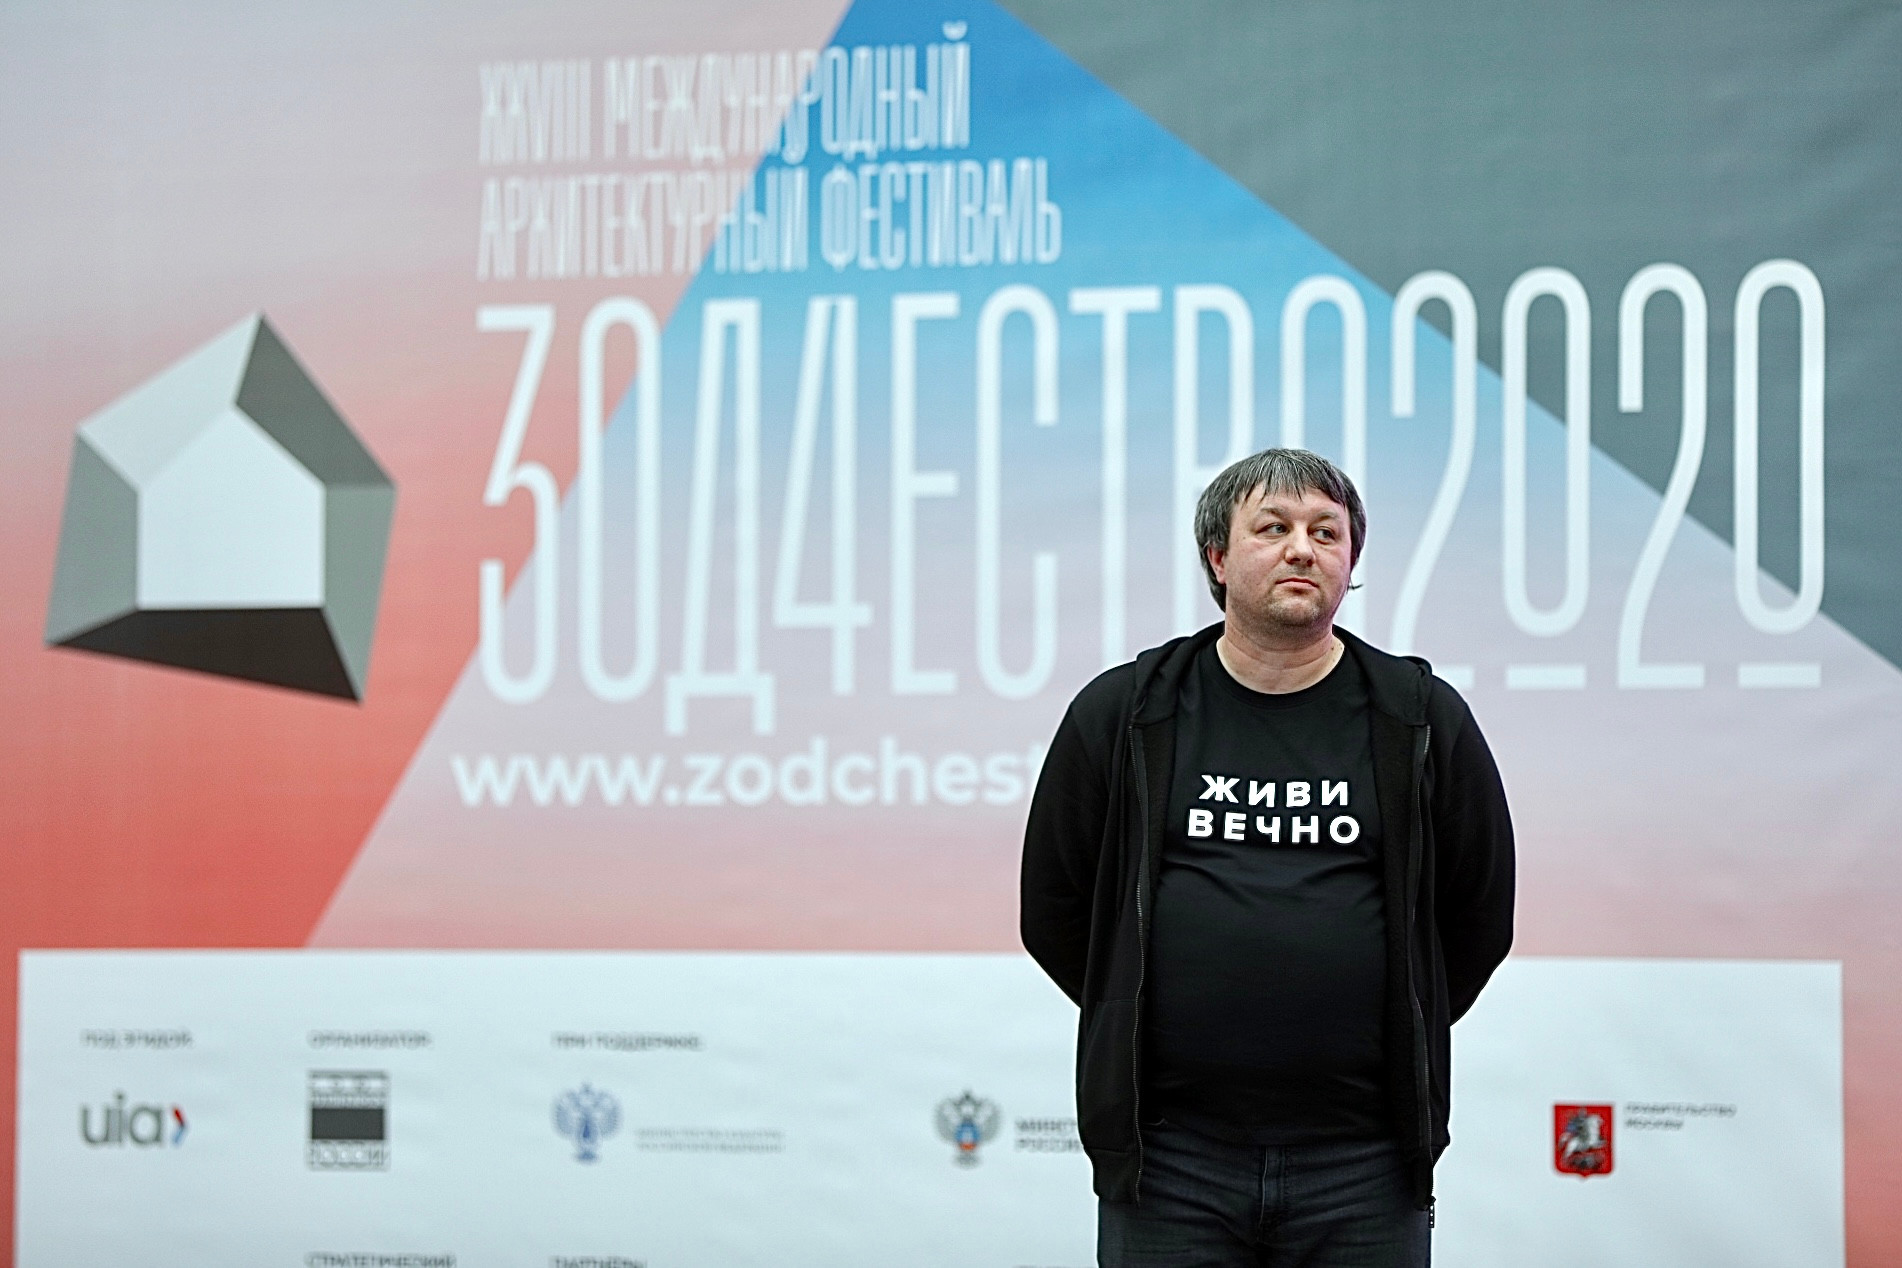 XXVIII Международный архитектурный фестиваль «Зодчество» и III Всероссийский фестиваль архитектуры и дизайна Best Interior Festival. 2020